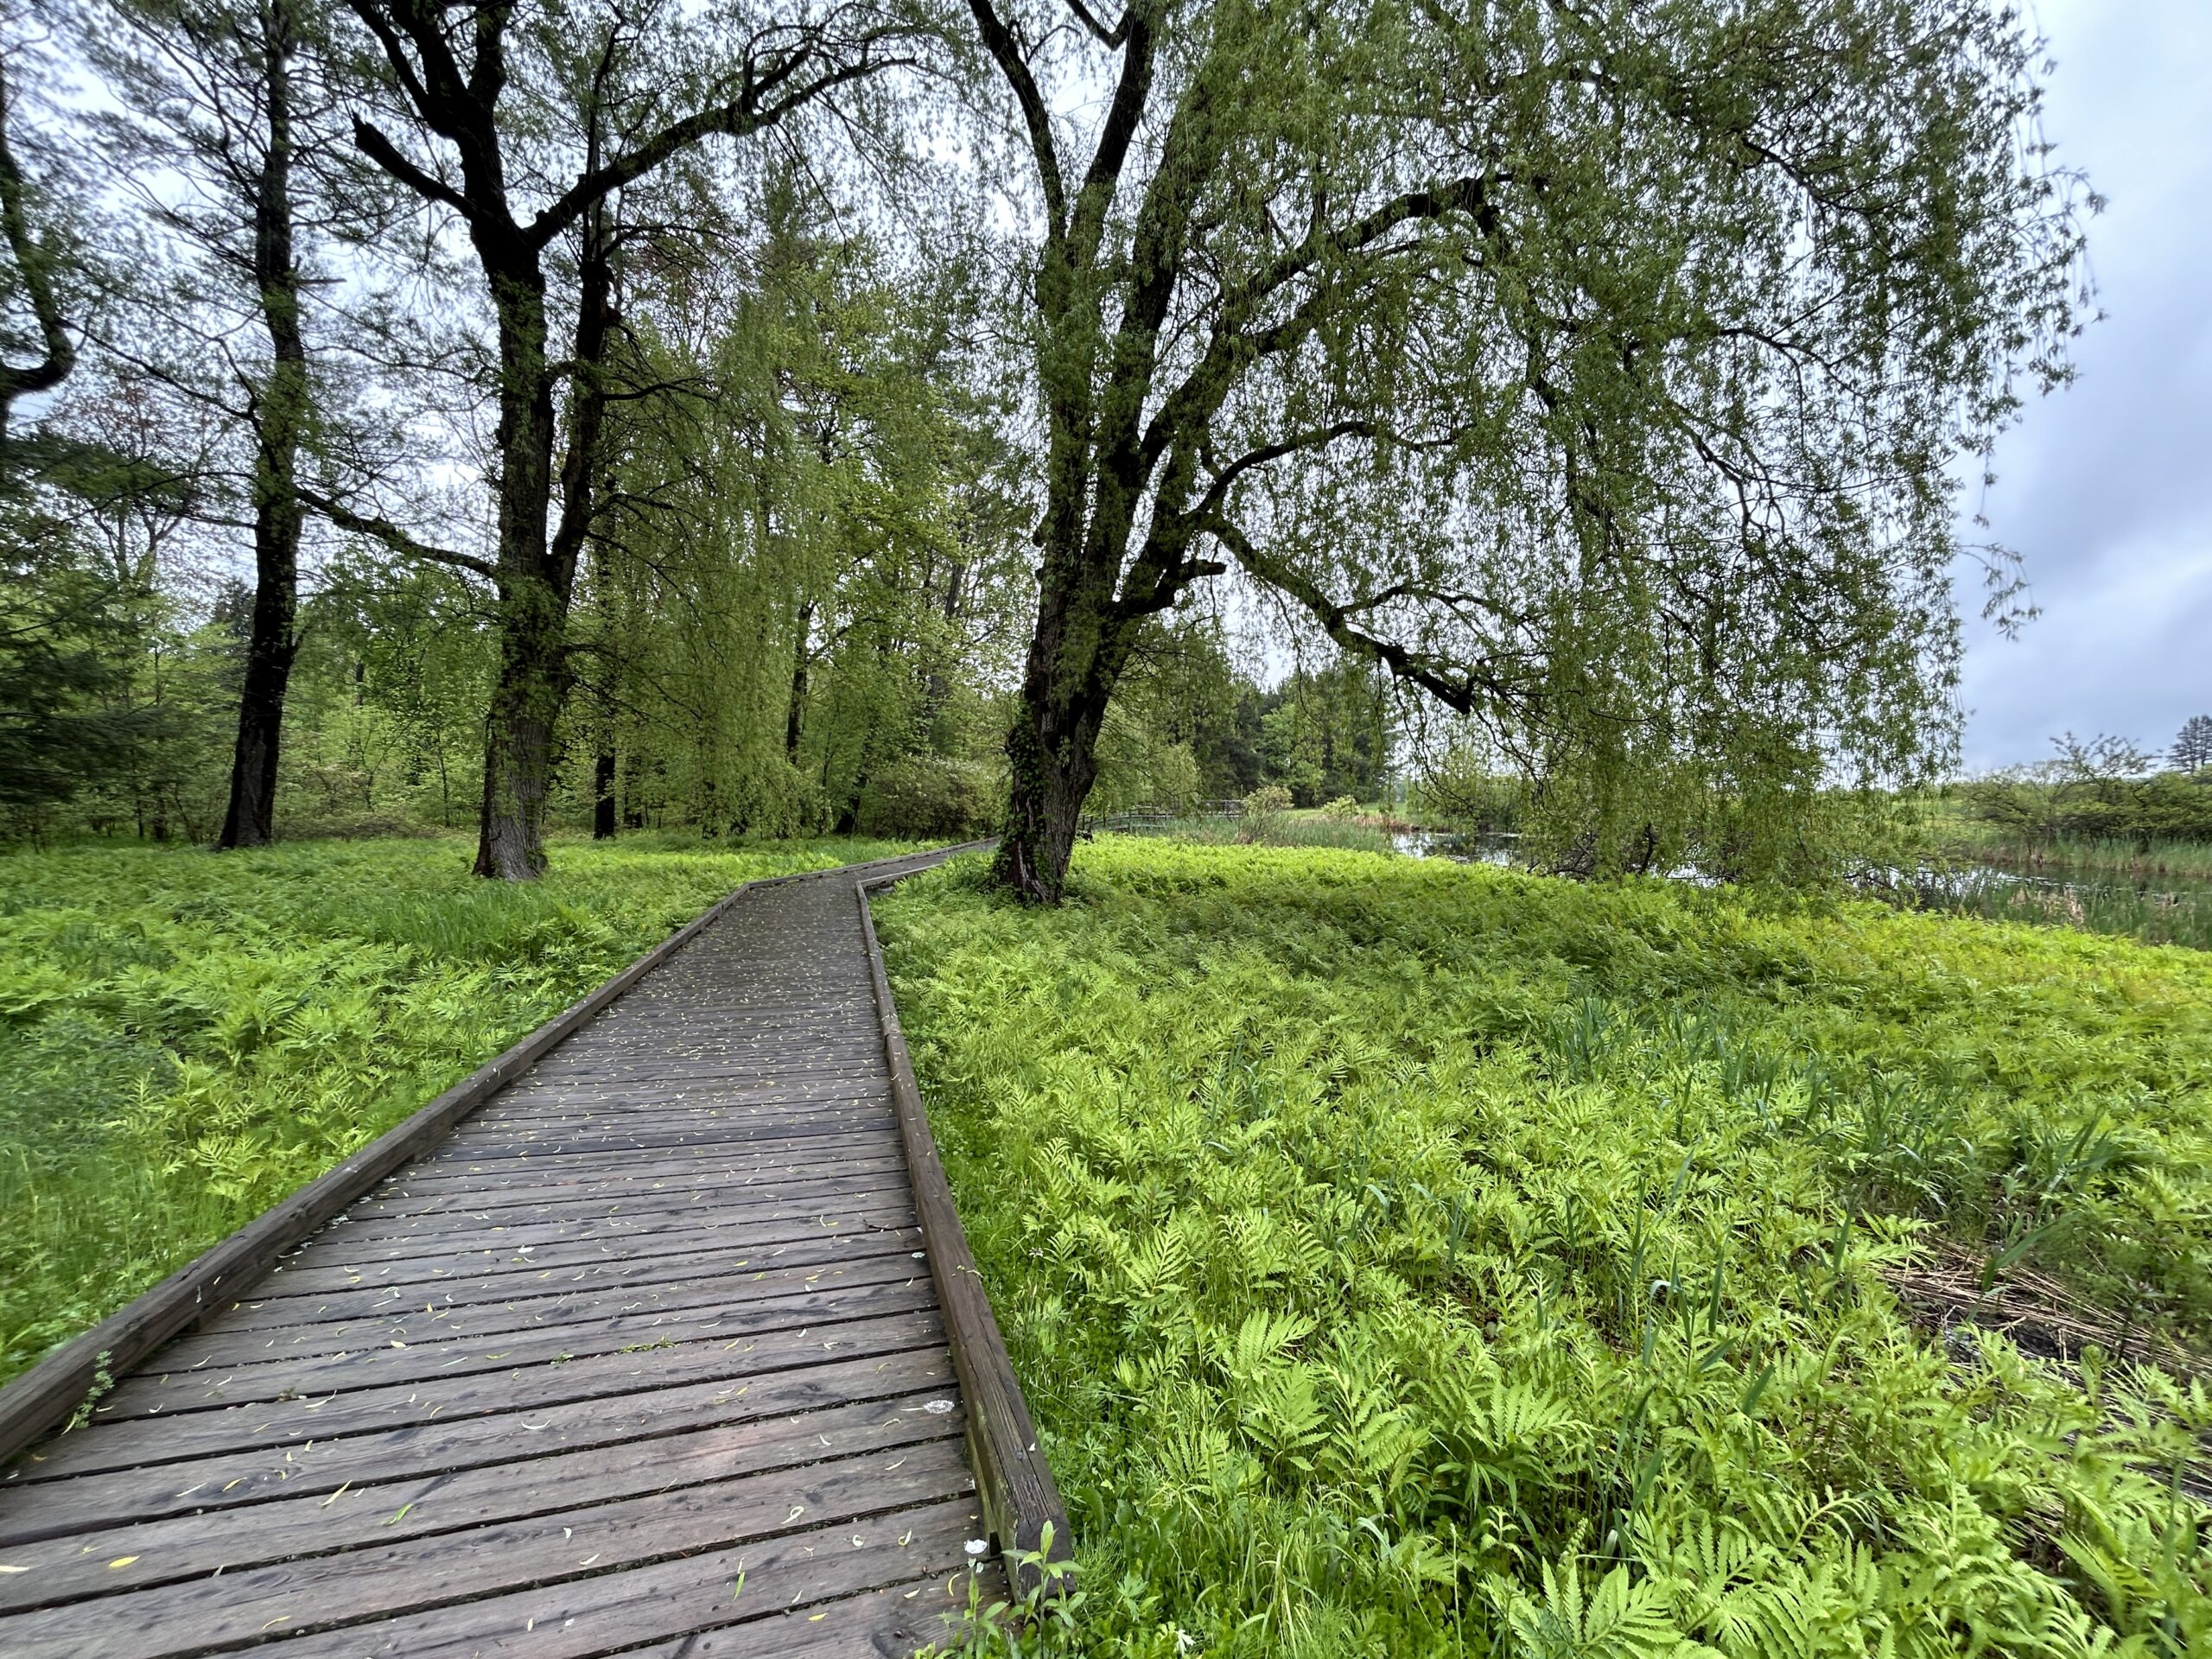 A wooden boardwalk extends through lush greenery.